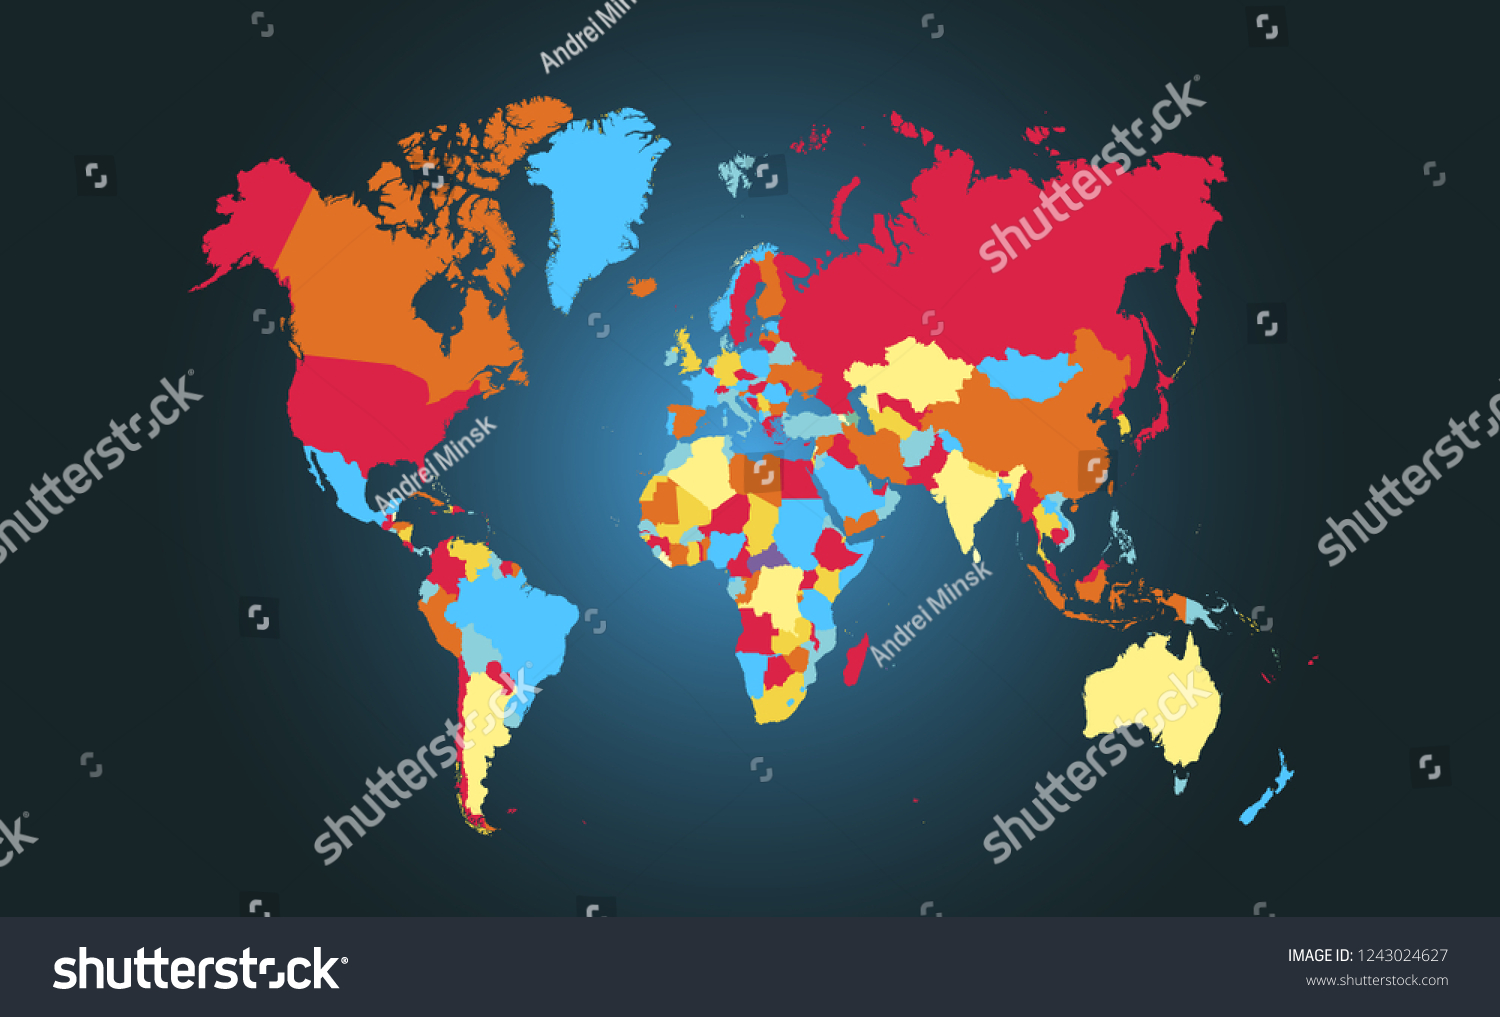 color-world-map-vector-vector-de-stock-libre-de-regal-as-1243024627